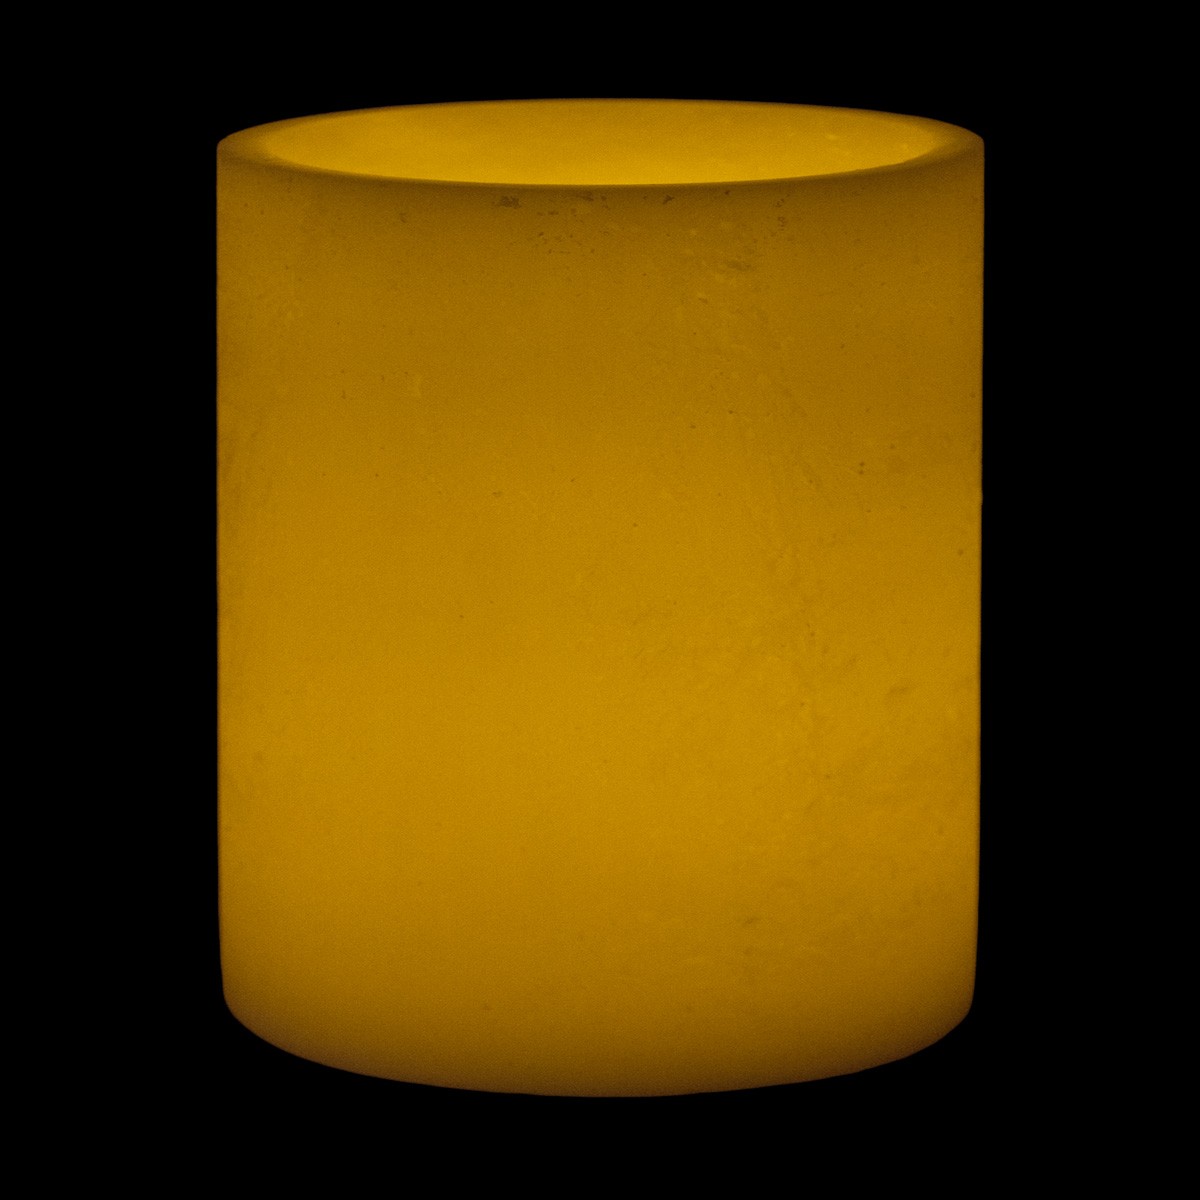 8x10 ivory round led extra large flameless pillar candles